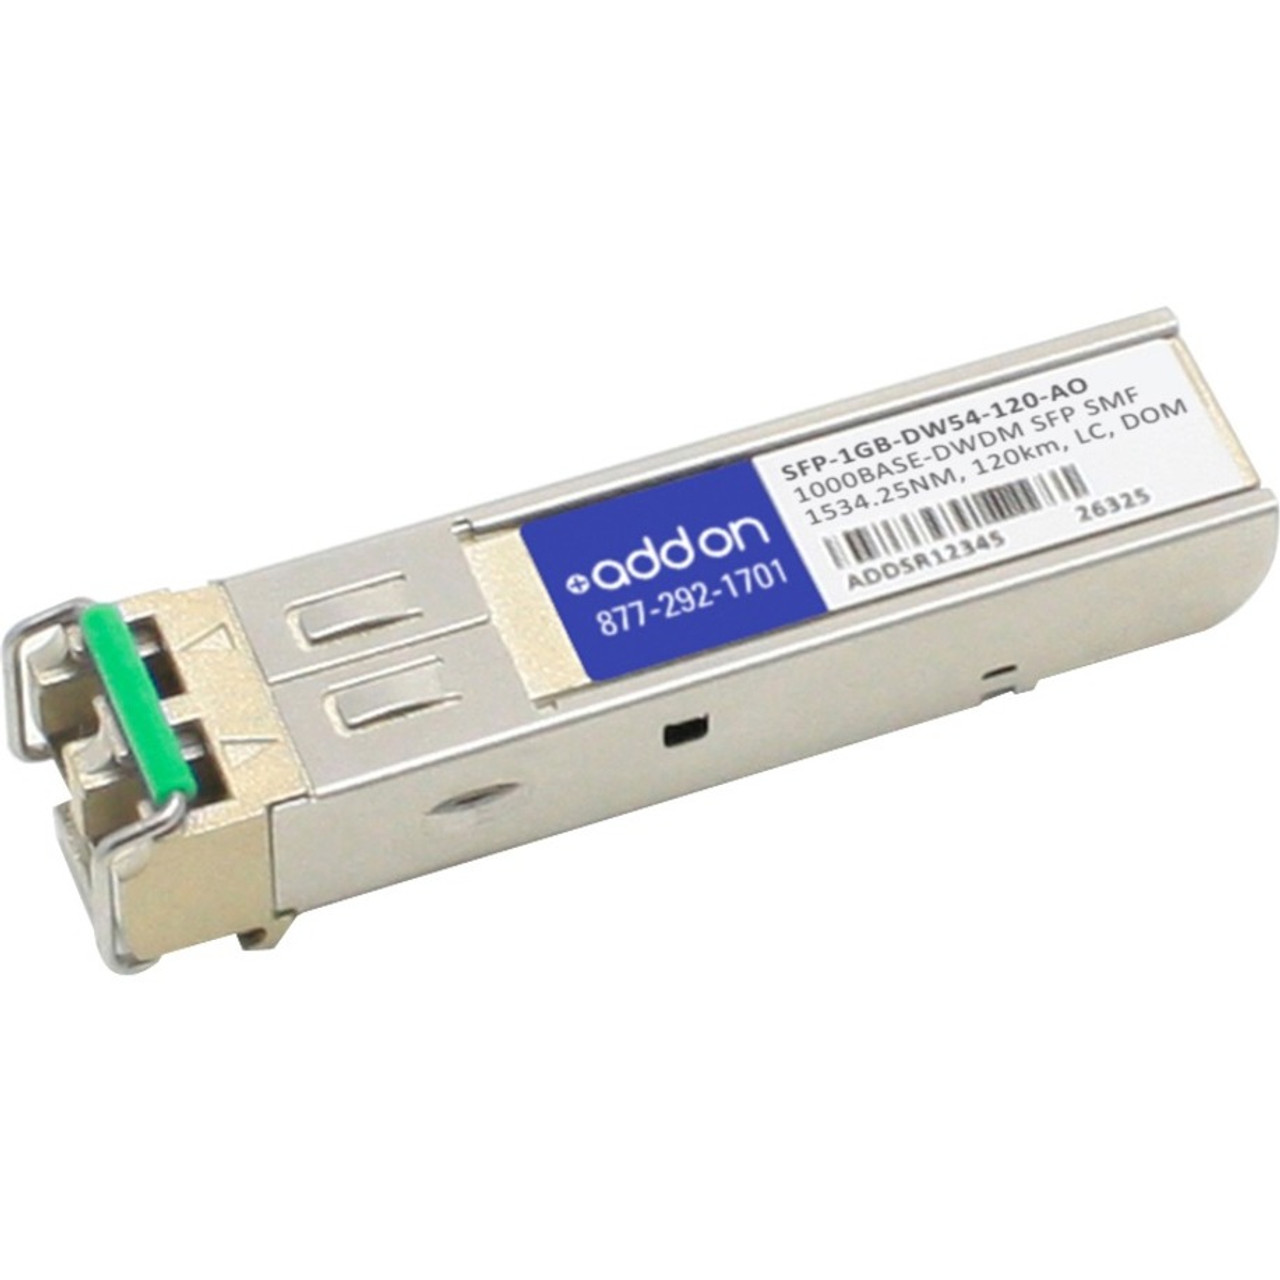 SFP-1GB-DW54-120-AO